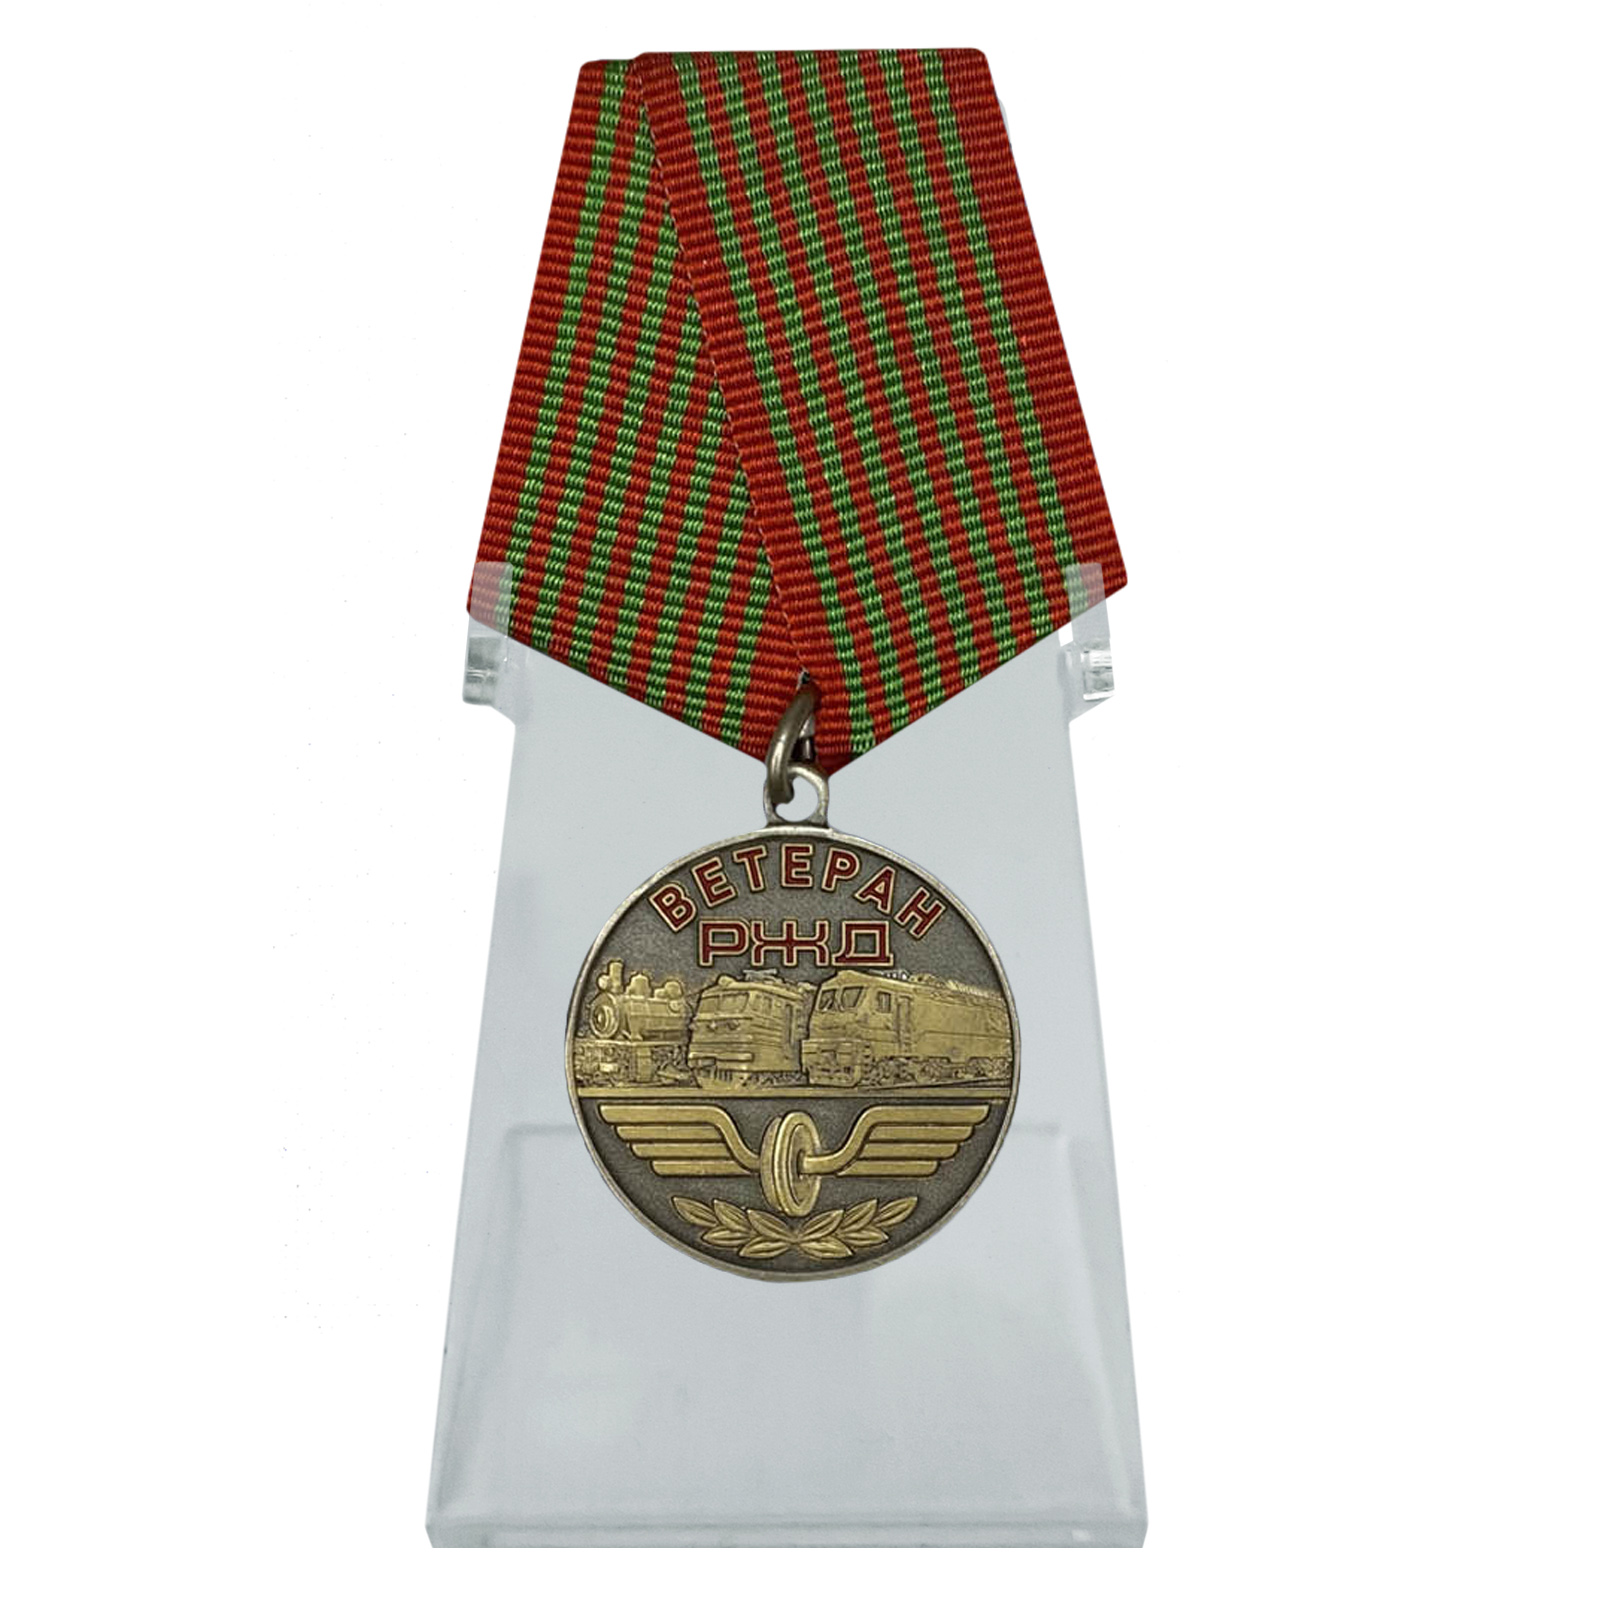 Купить медаль Ветеран РЖД на подставке по экономичной цене